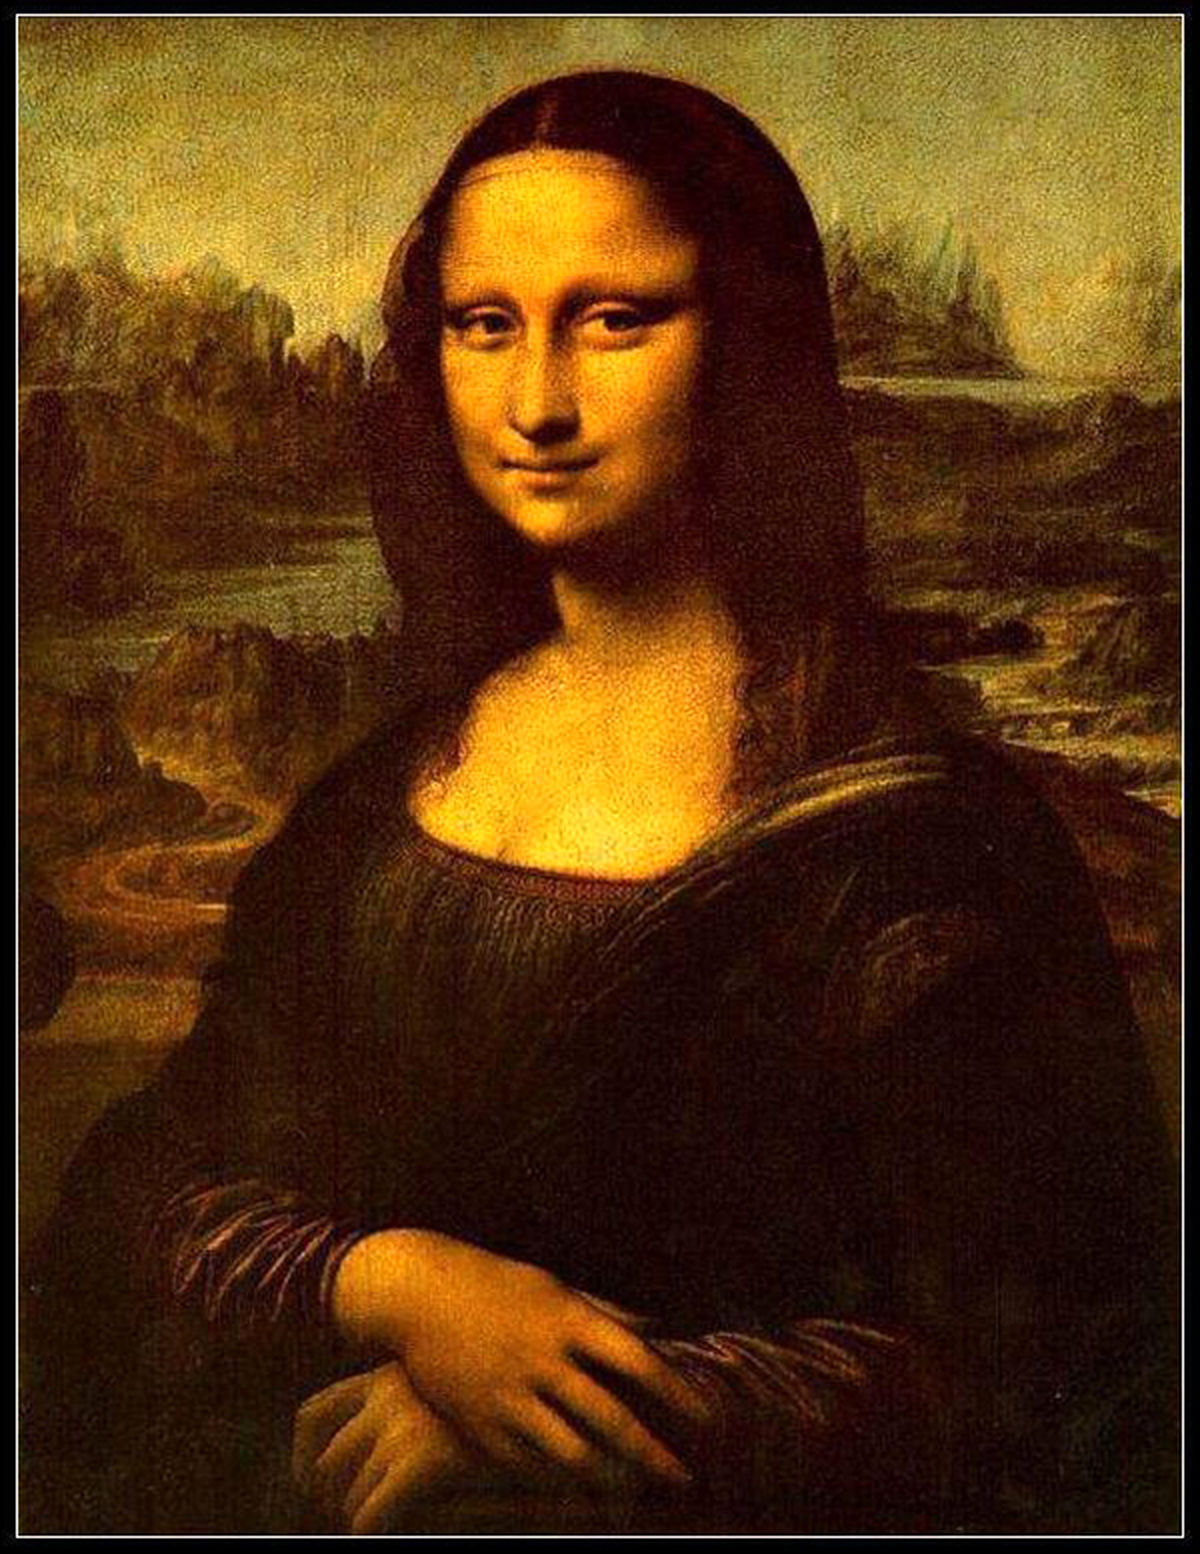 حقیقتی شگفت انگیز درمورد نقاشی معروف «مونالیزا» که به تازگی کشف شده است